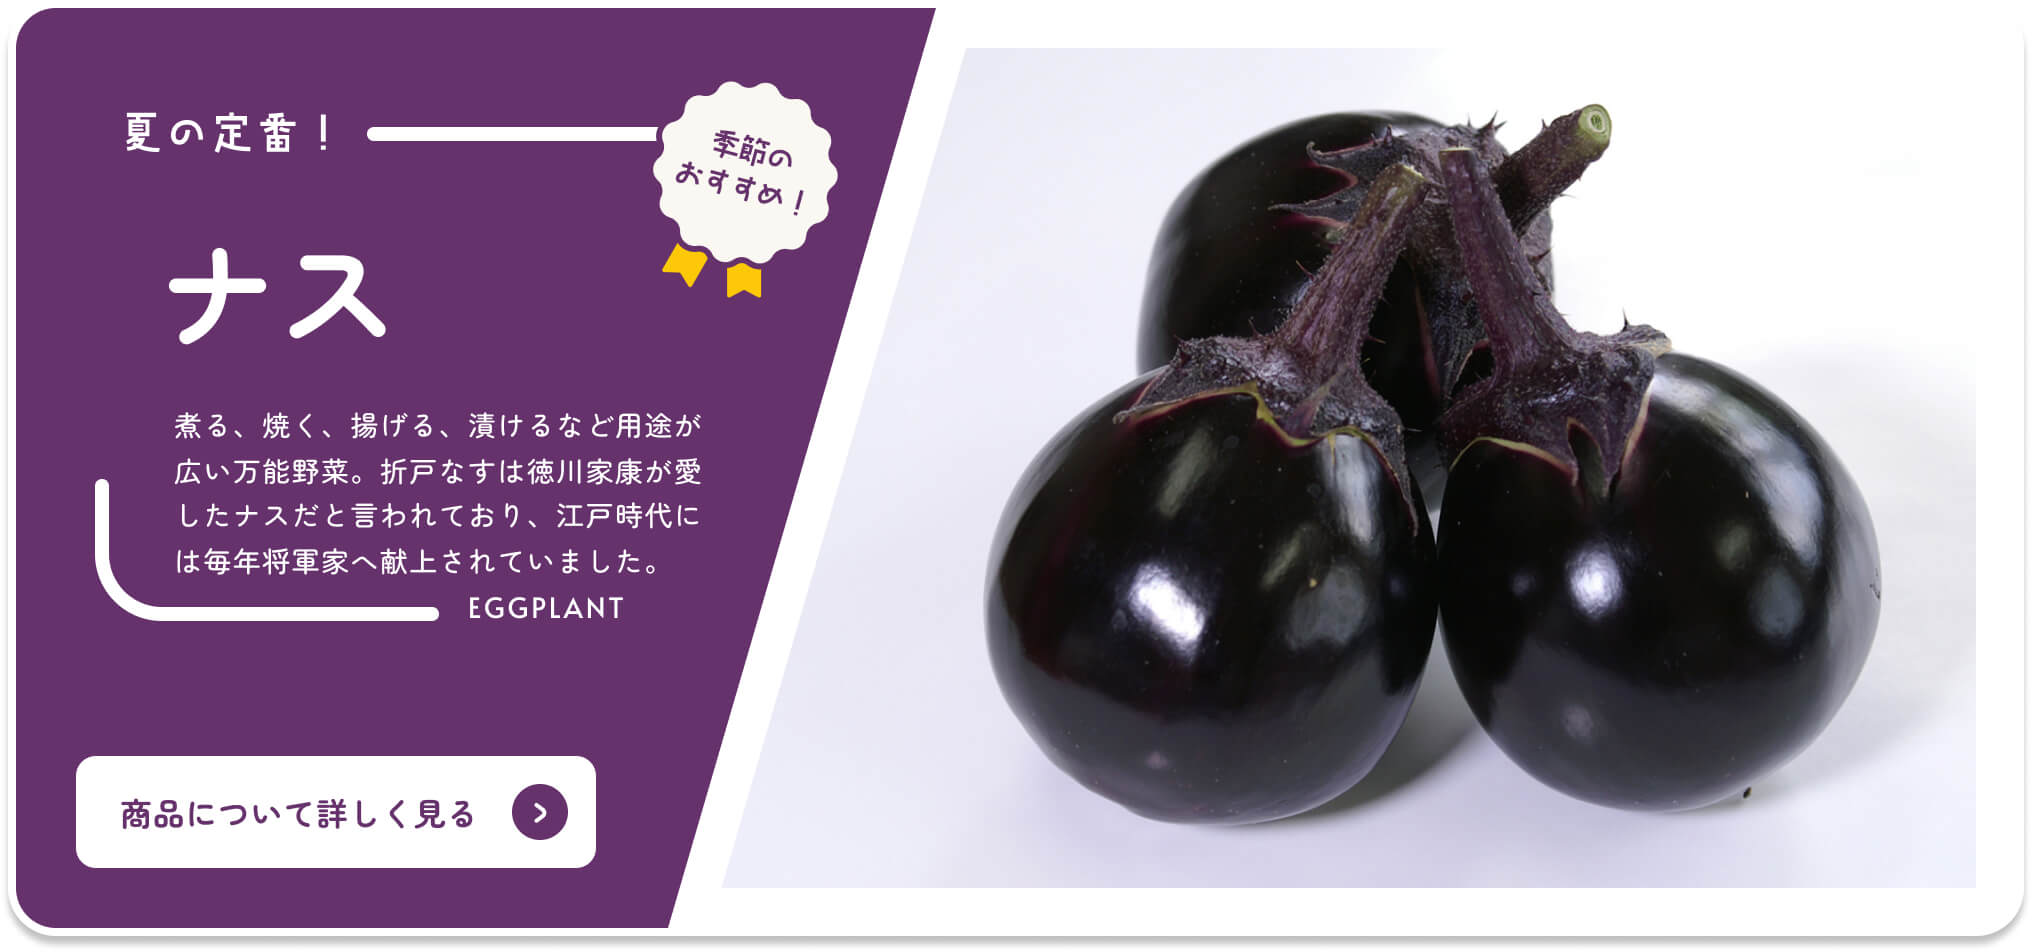 Buy Shizuoka Online Catalog Seasonal Recommended Eggplant